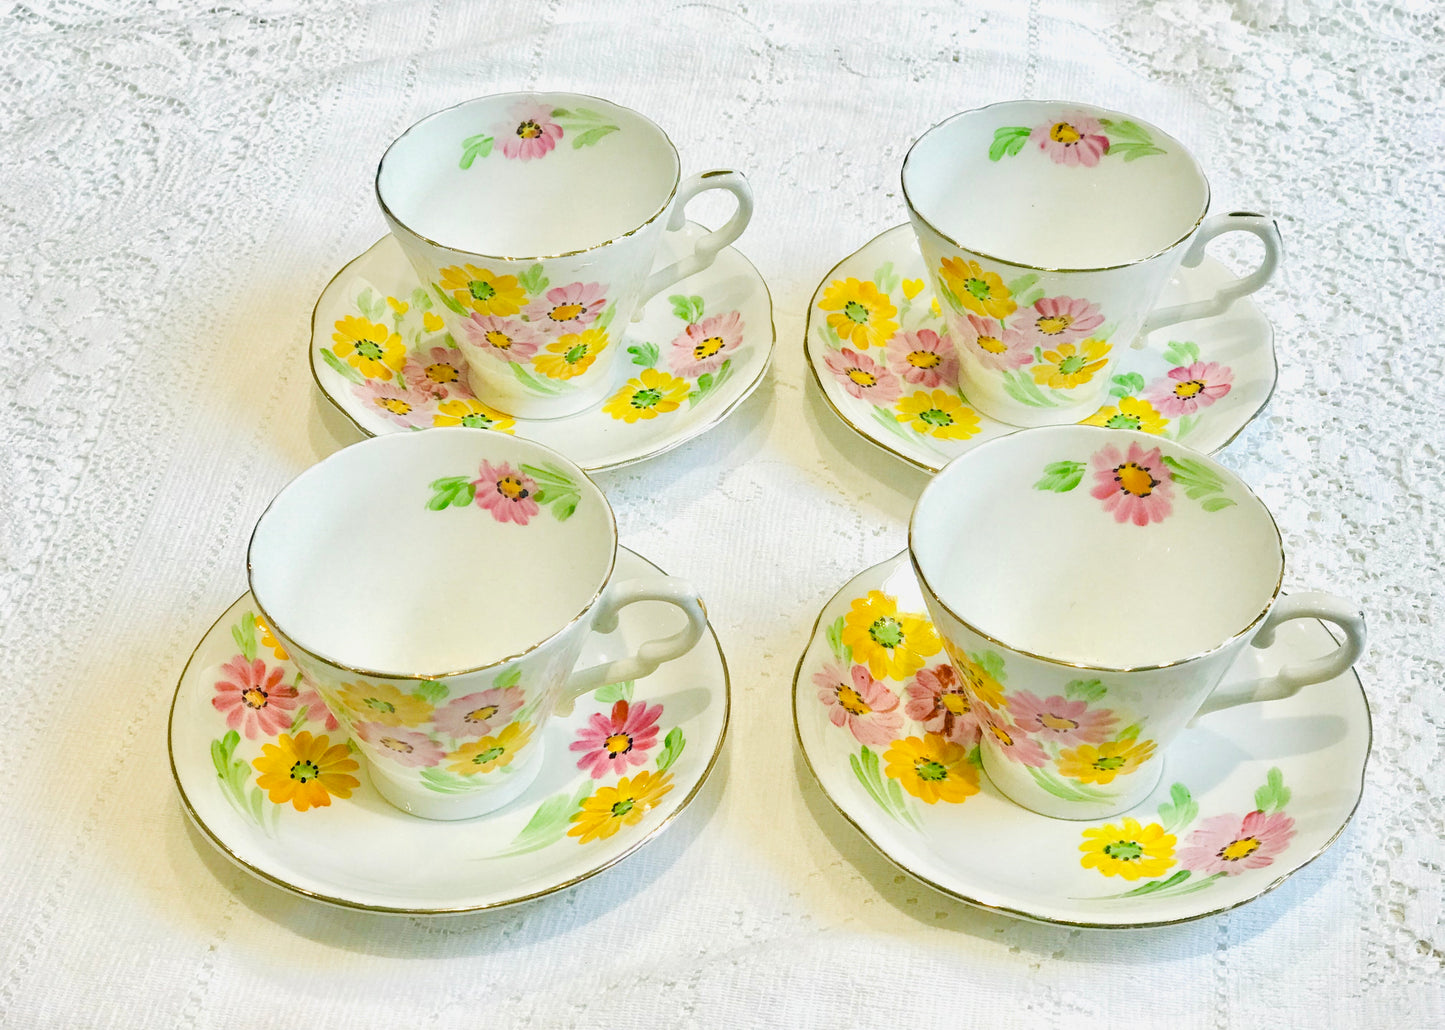 Pretty Vintage parte juego de té flores rosas y amarillas